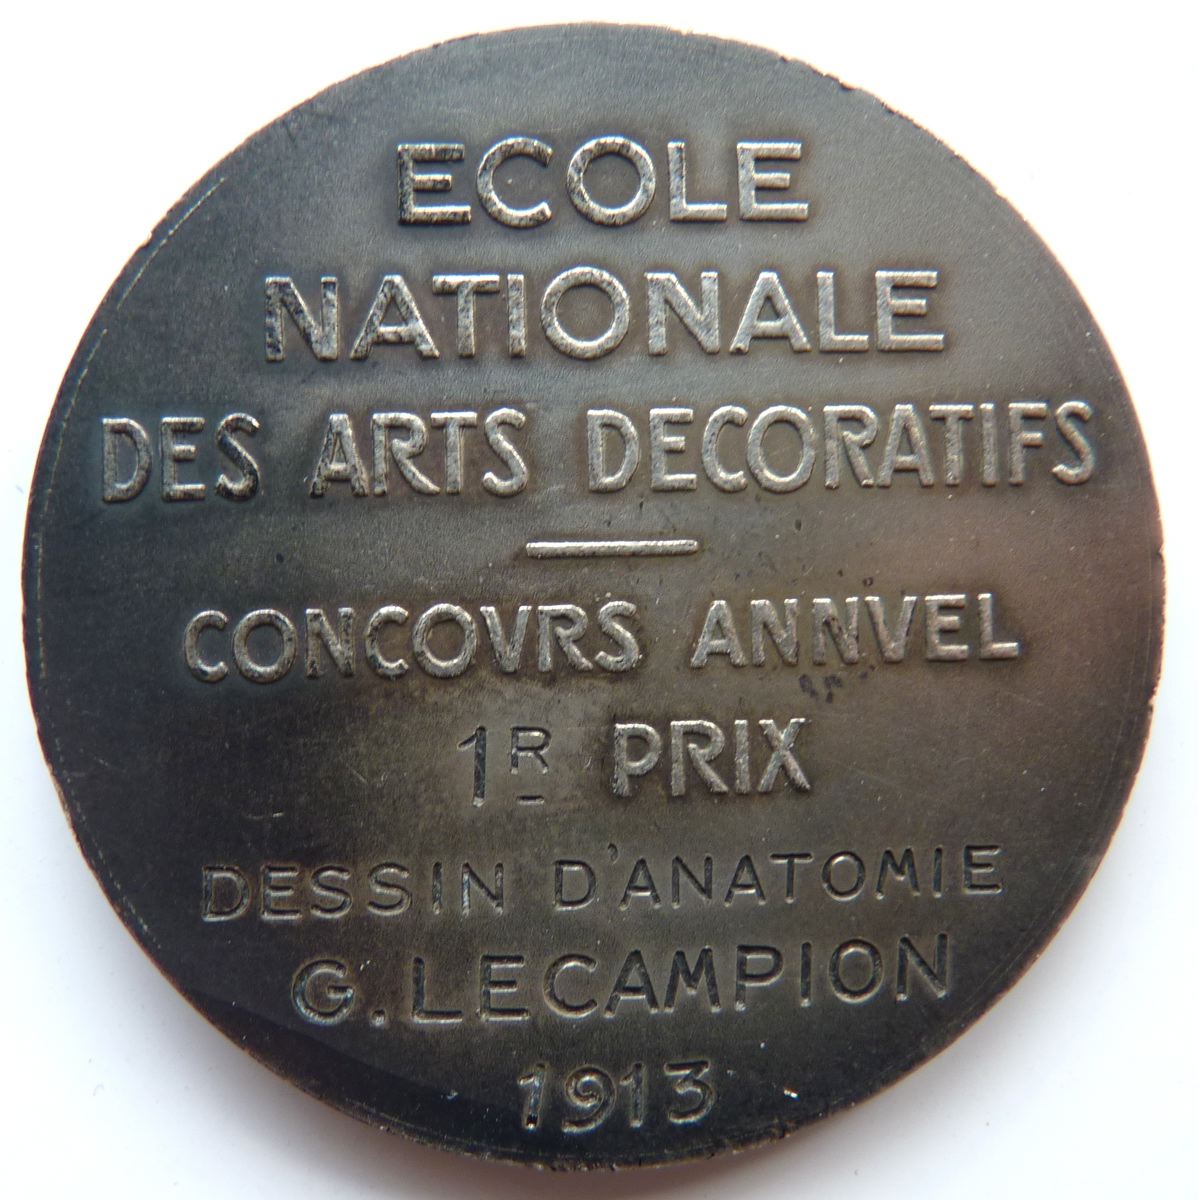 Ecole Nationale des Arts Décoratifs - Concours annuel 1r prix - Dessin d'anatomie - G. Lecampion 1913